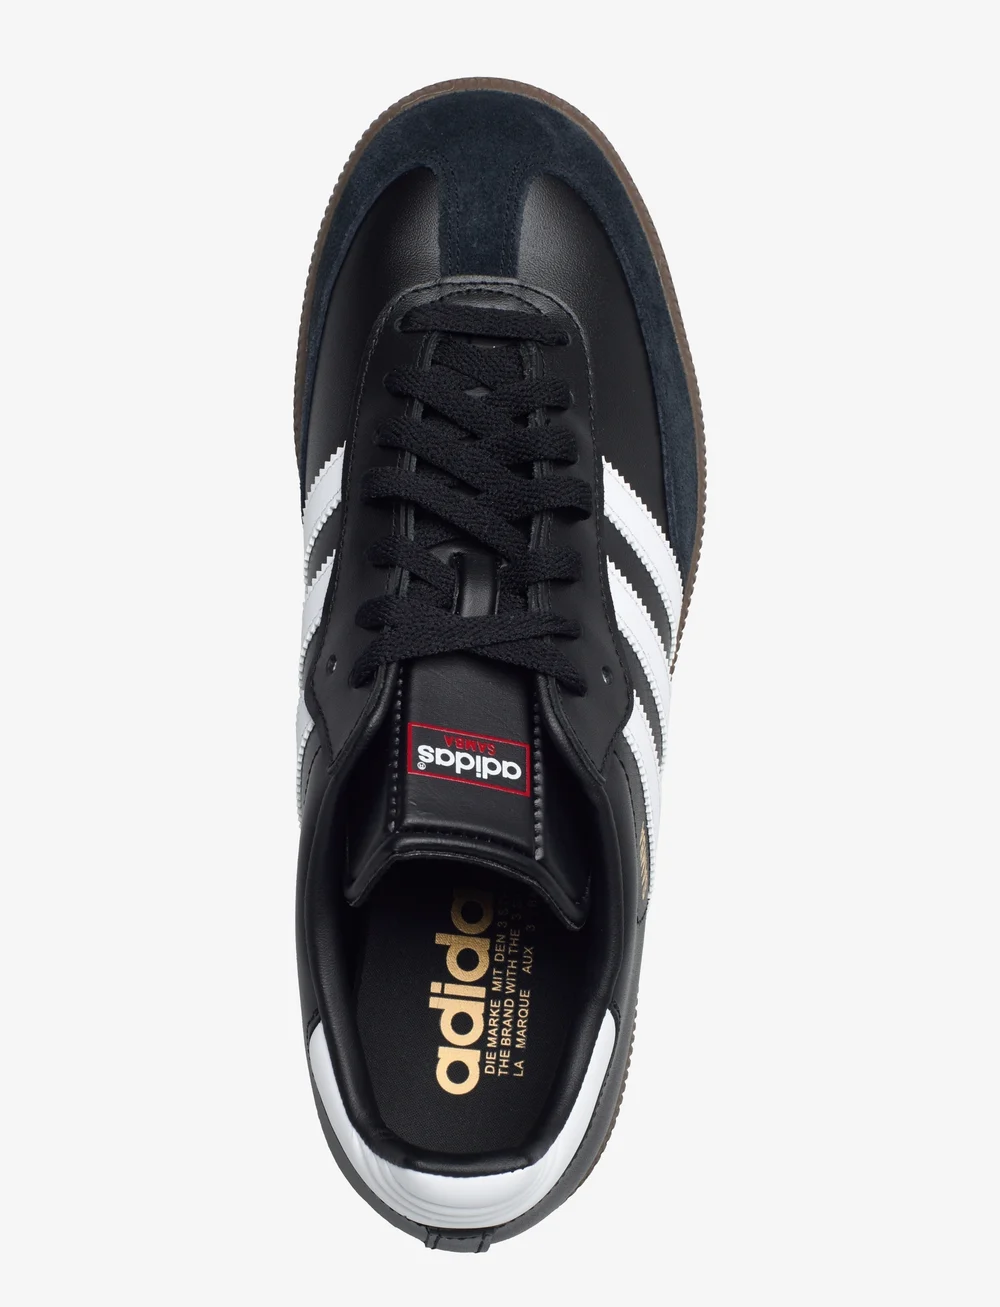 adidas samba black shoes